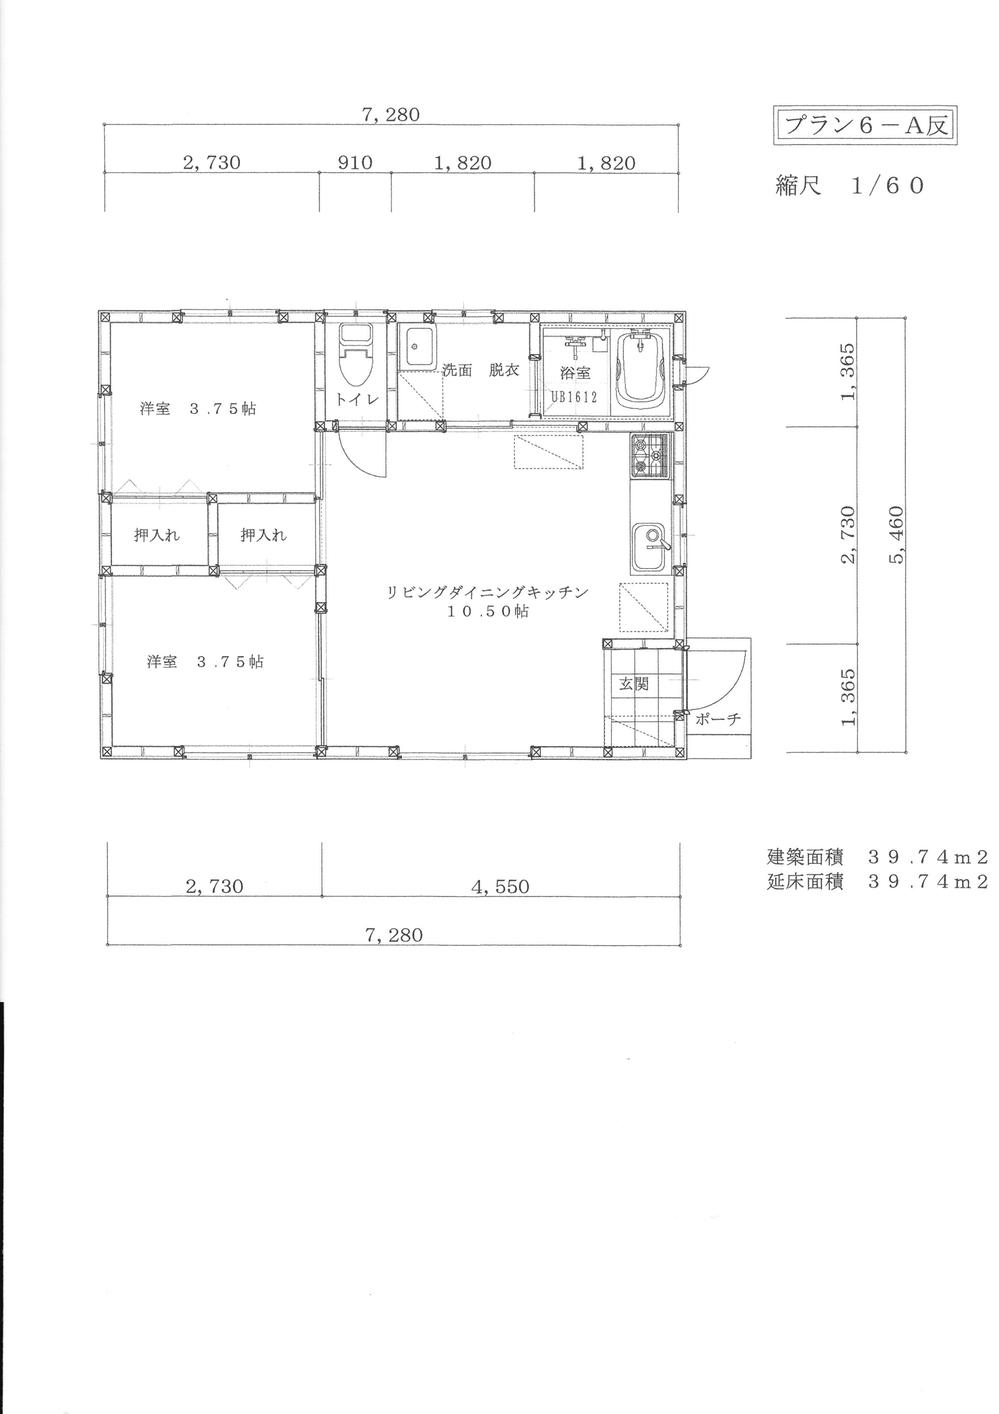 Floor plan. 9.9 million yen, 2LDK, Land area 496 sq m , Building area 39.74 sq m